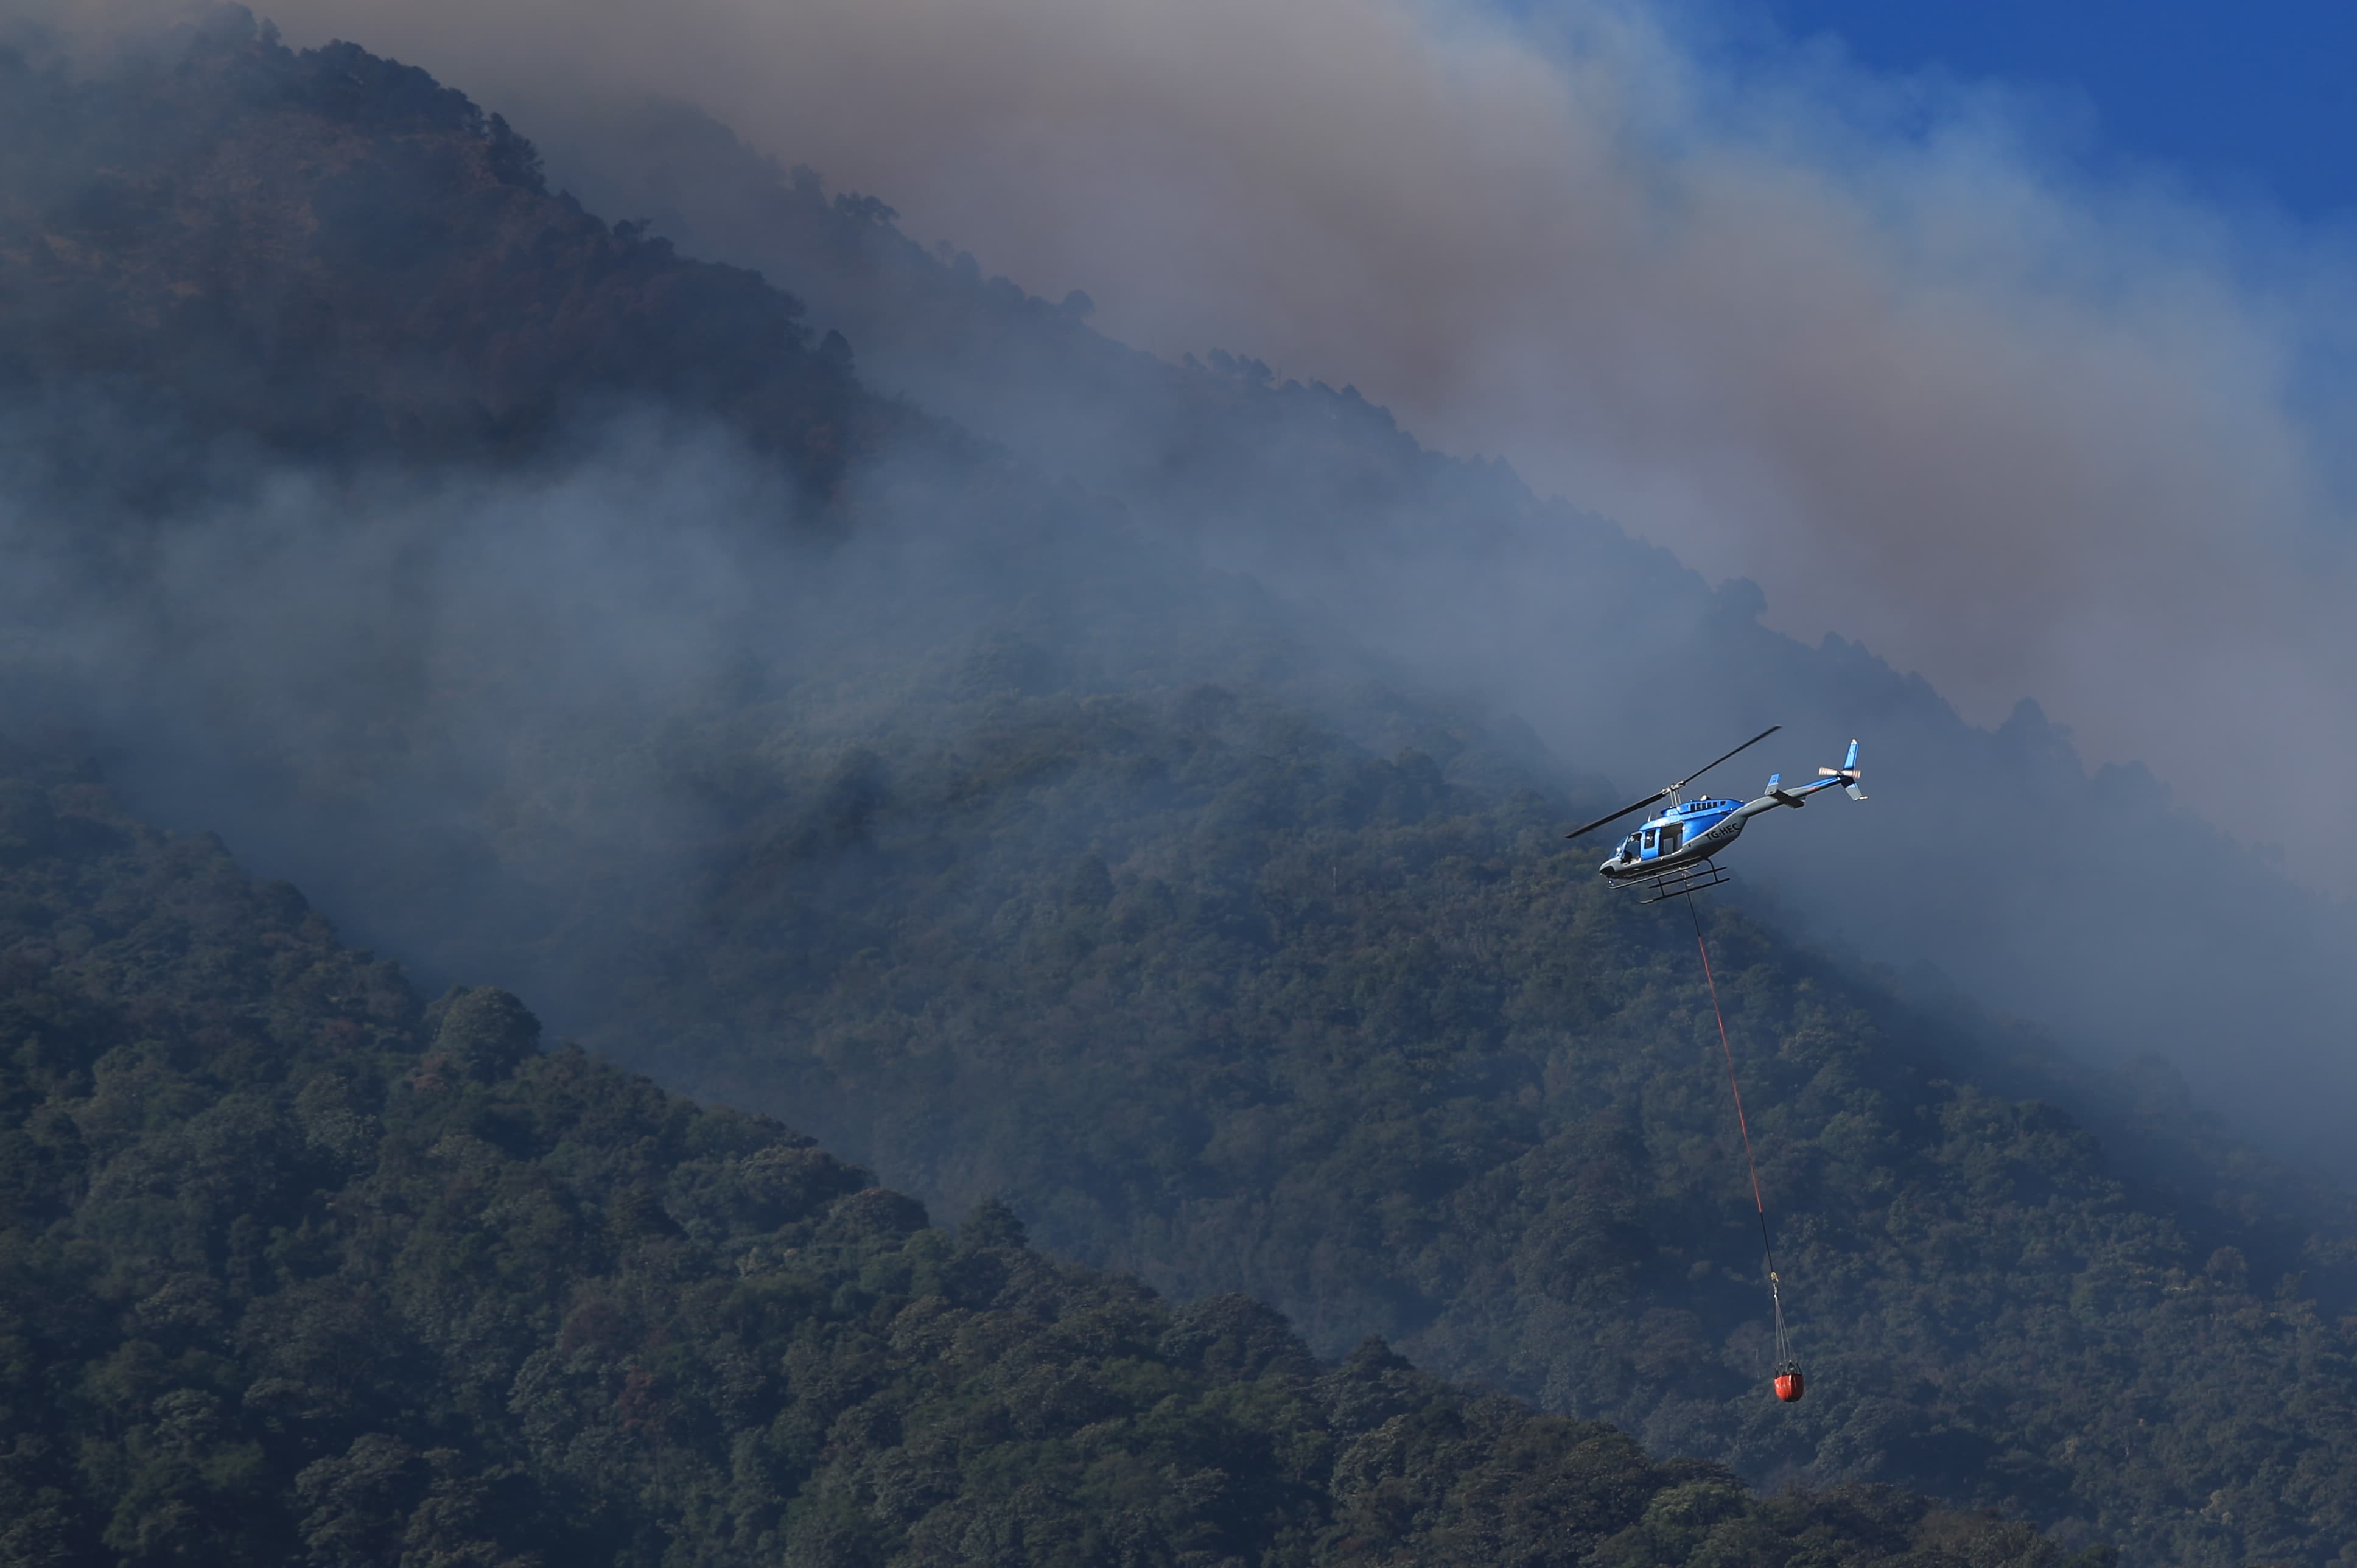 Diversas instituciones hacen labores de combate a un incendio forestal en el volcán de Fuego. Usan helicópteros para lanzar agua hacia el fuego. (Foto Prensa Libre: Carlos Hernández Ovalle).